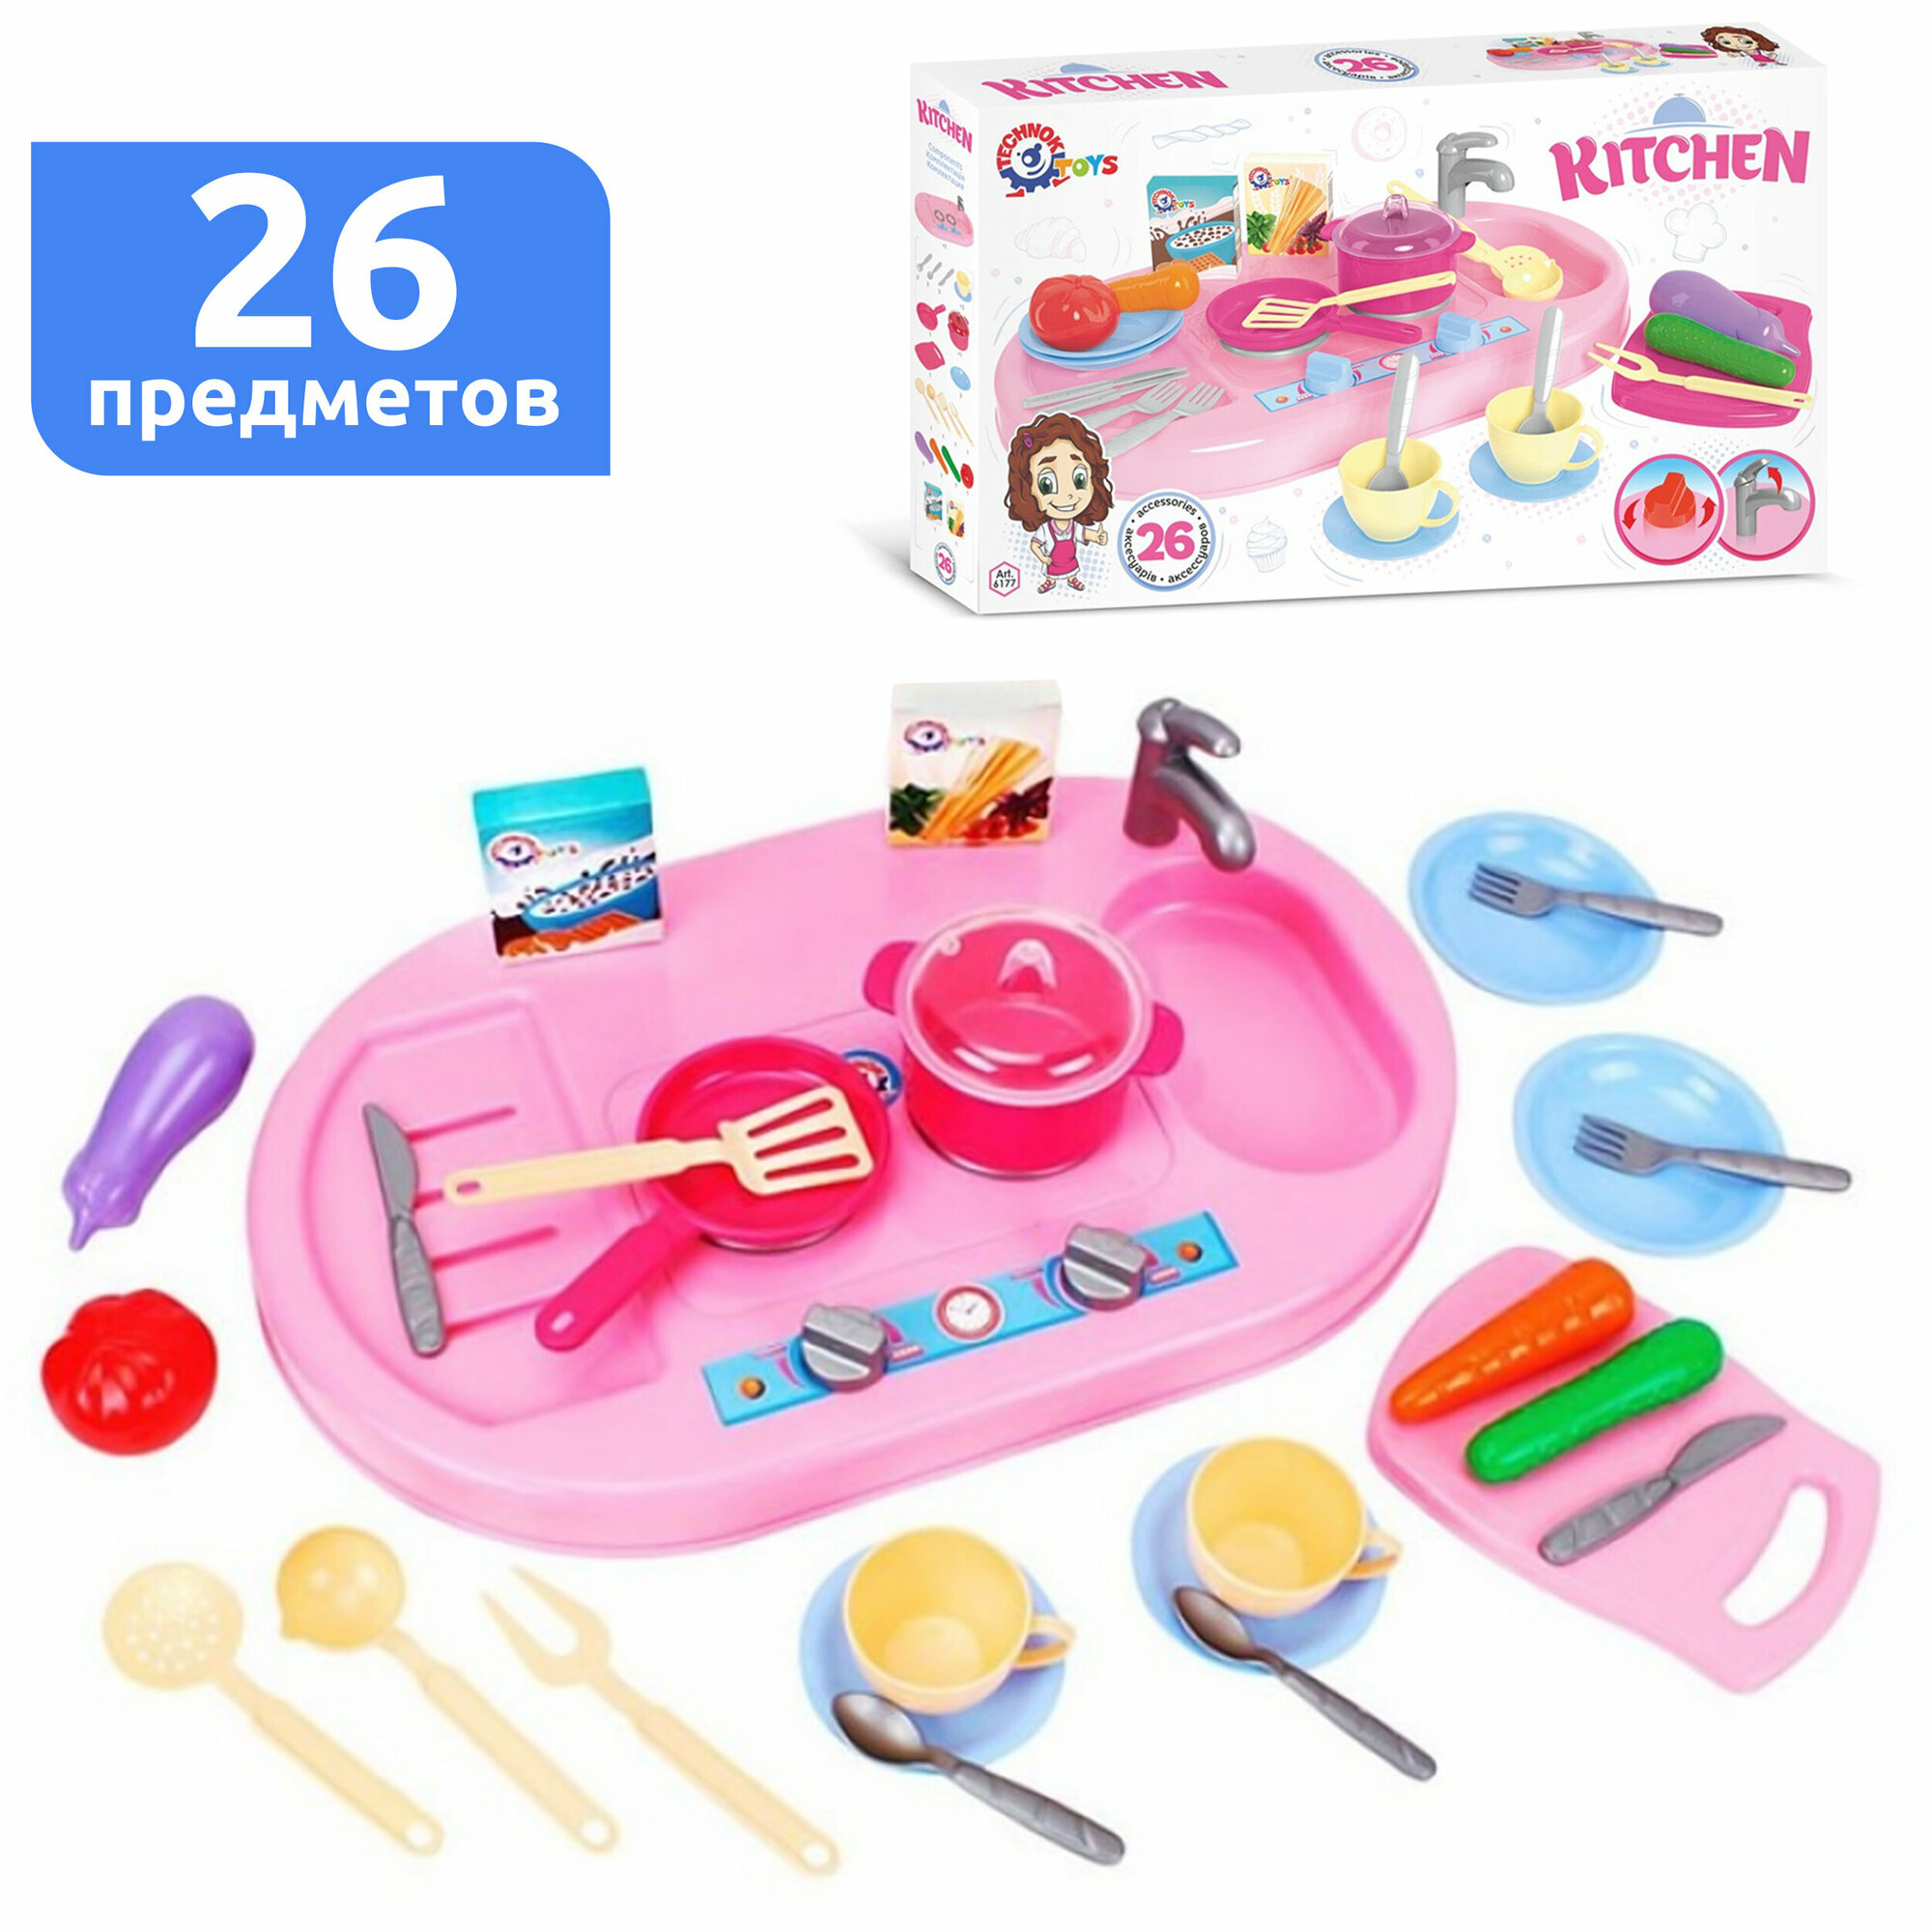 Кухня детская игровая с плитой 26 элементов технок / посуда игрушечная для детей